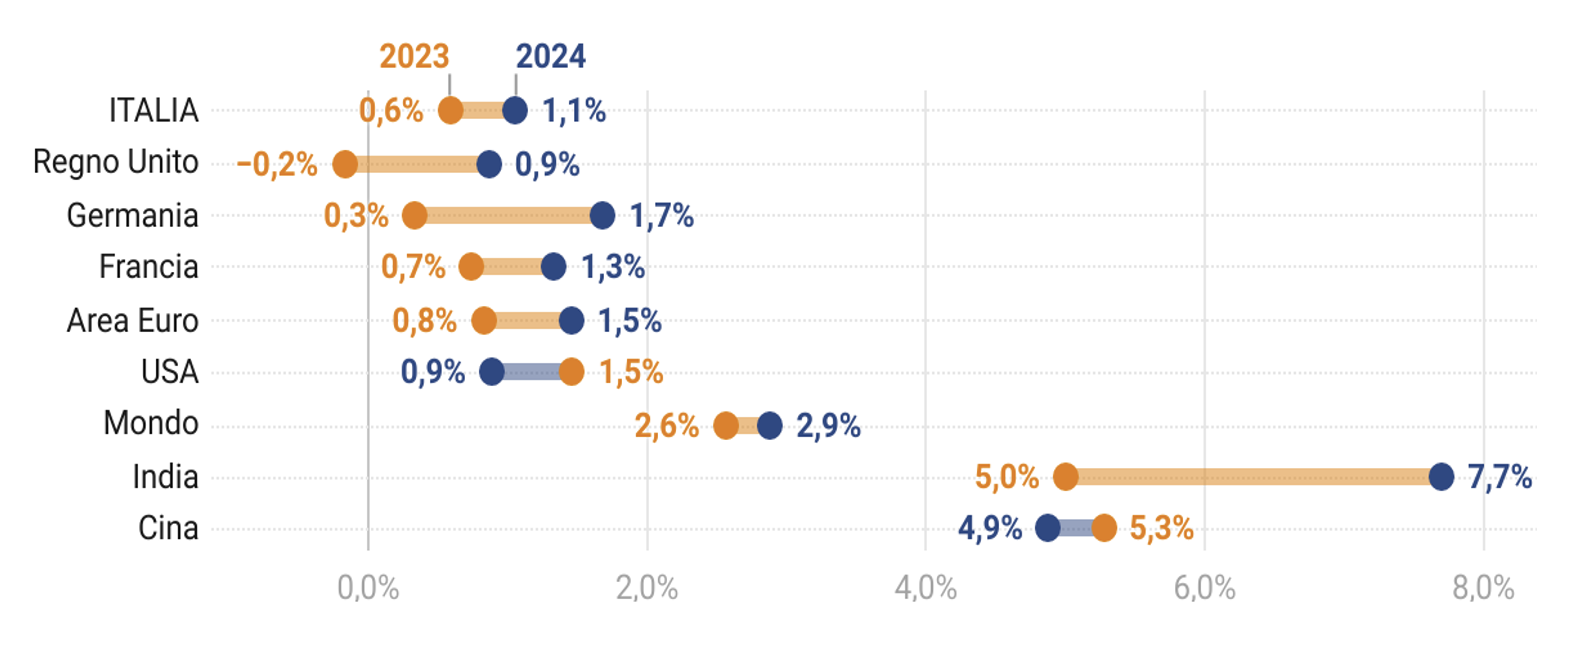 Figura 2 - Le previsioni di crescita delle principali economie mondiali per il biennio 2023-2024 